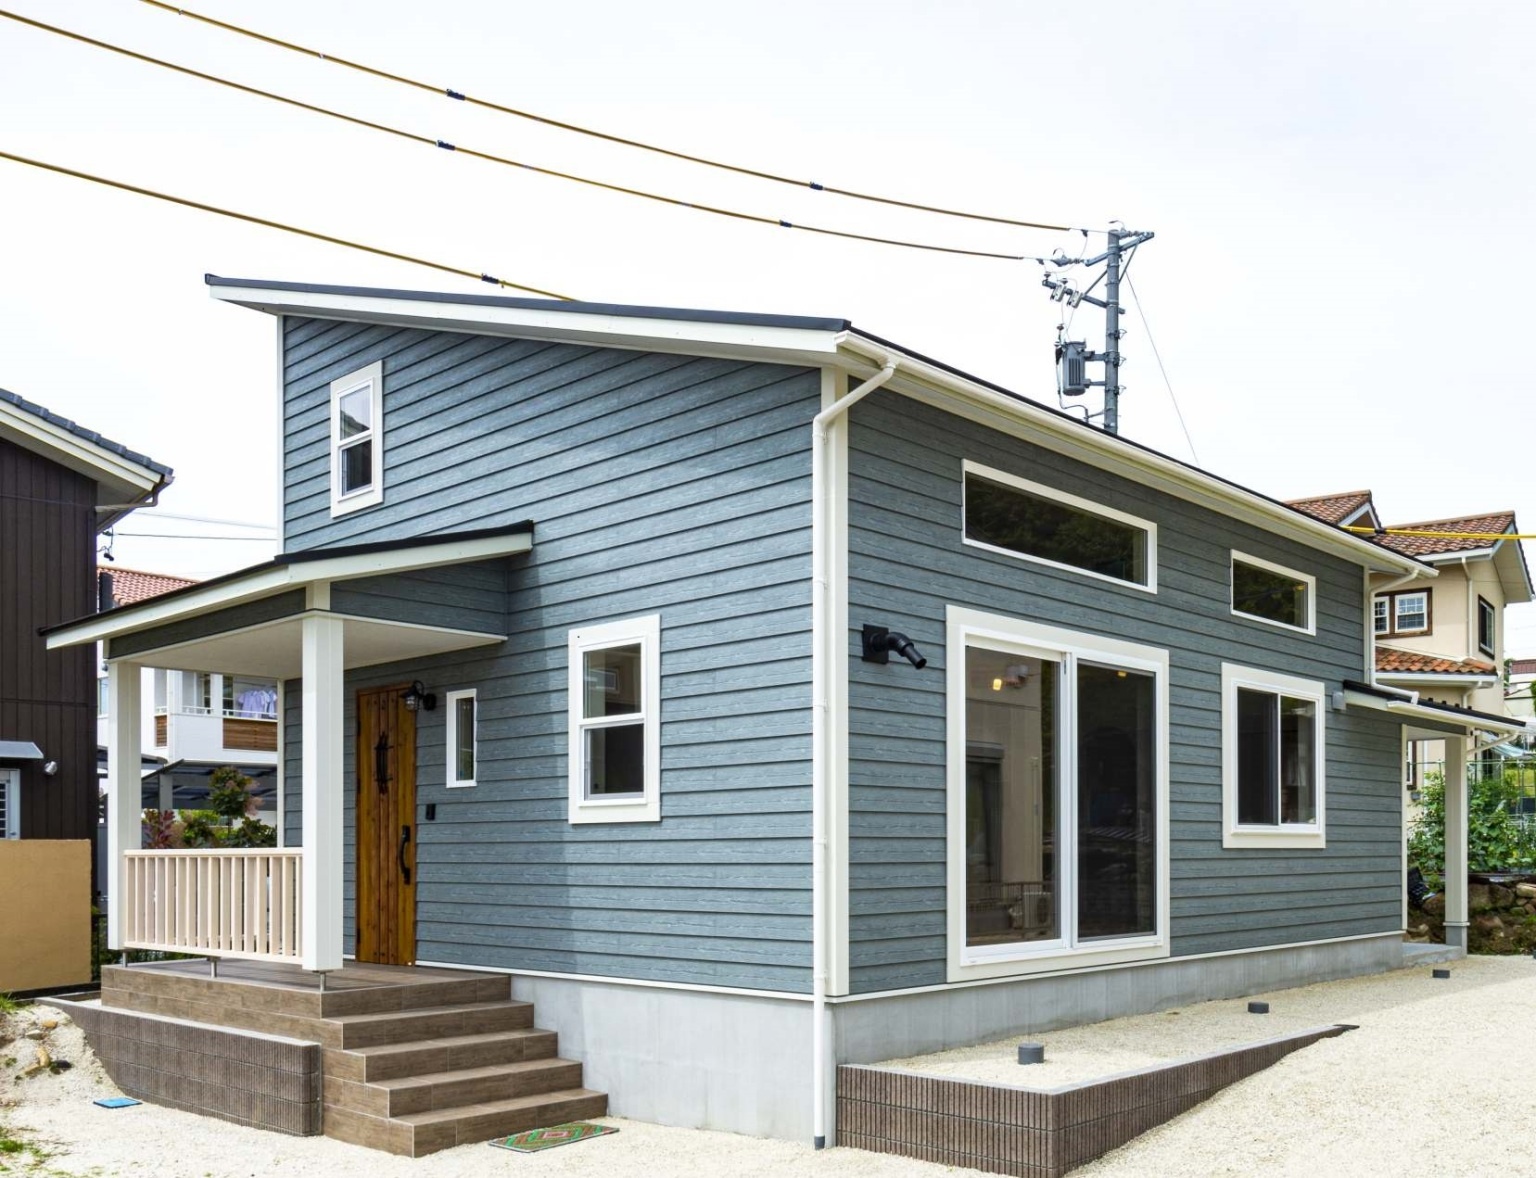 アメリカンカントリーの家 カントリー調のブルーのラップサイディング 重量木骨の家 選ばれた工務店と建てる木造注文住宅